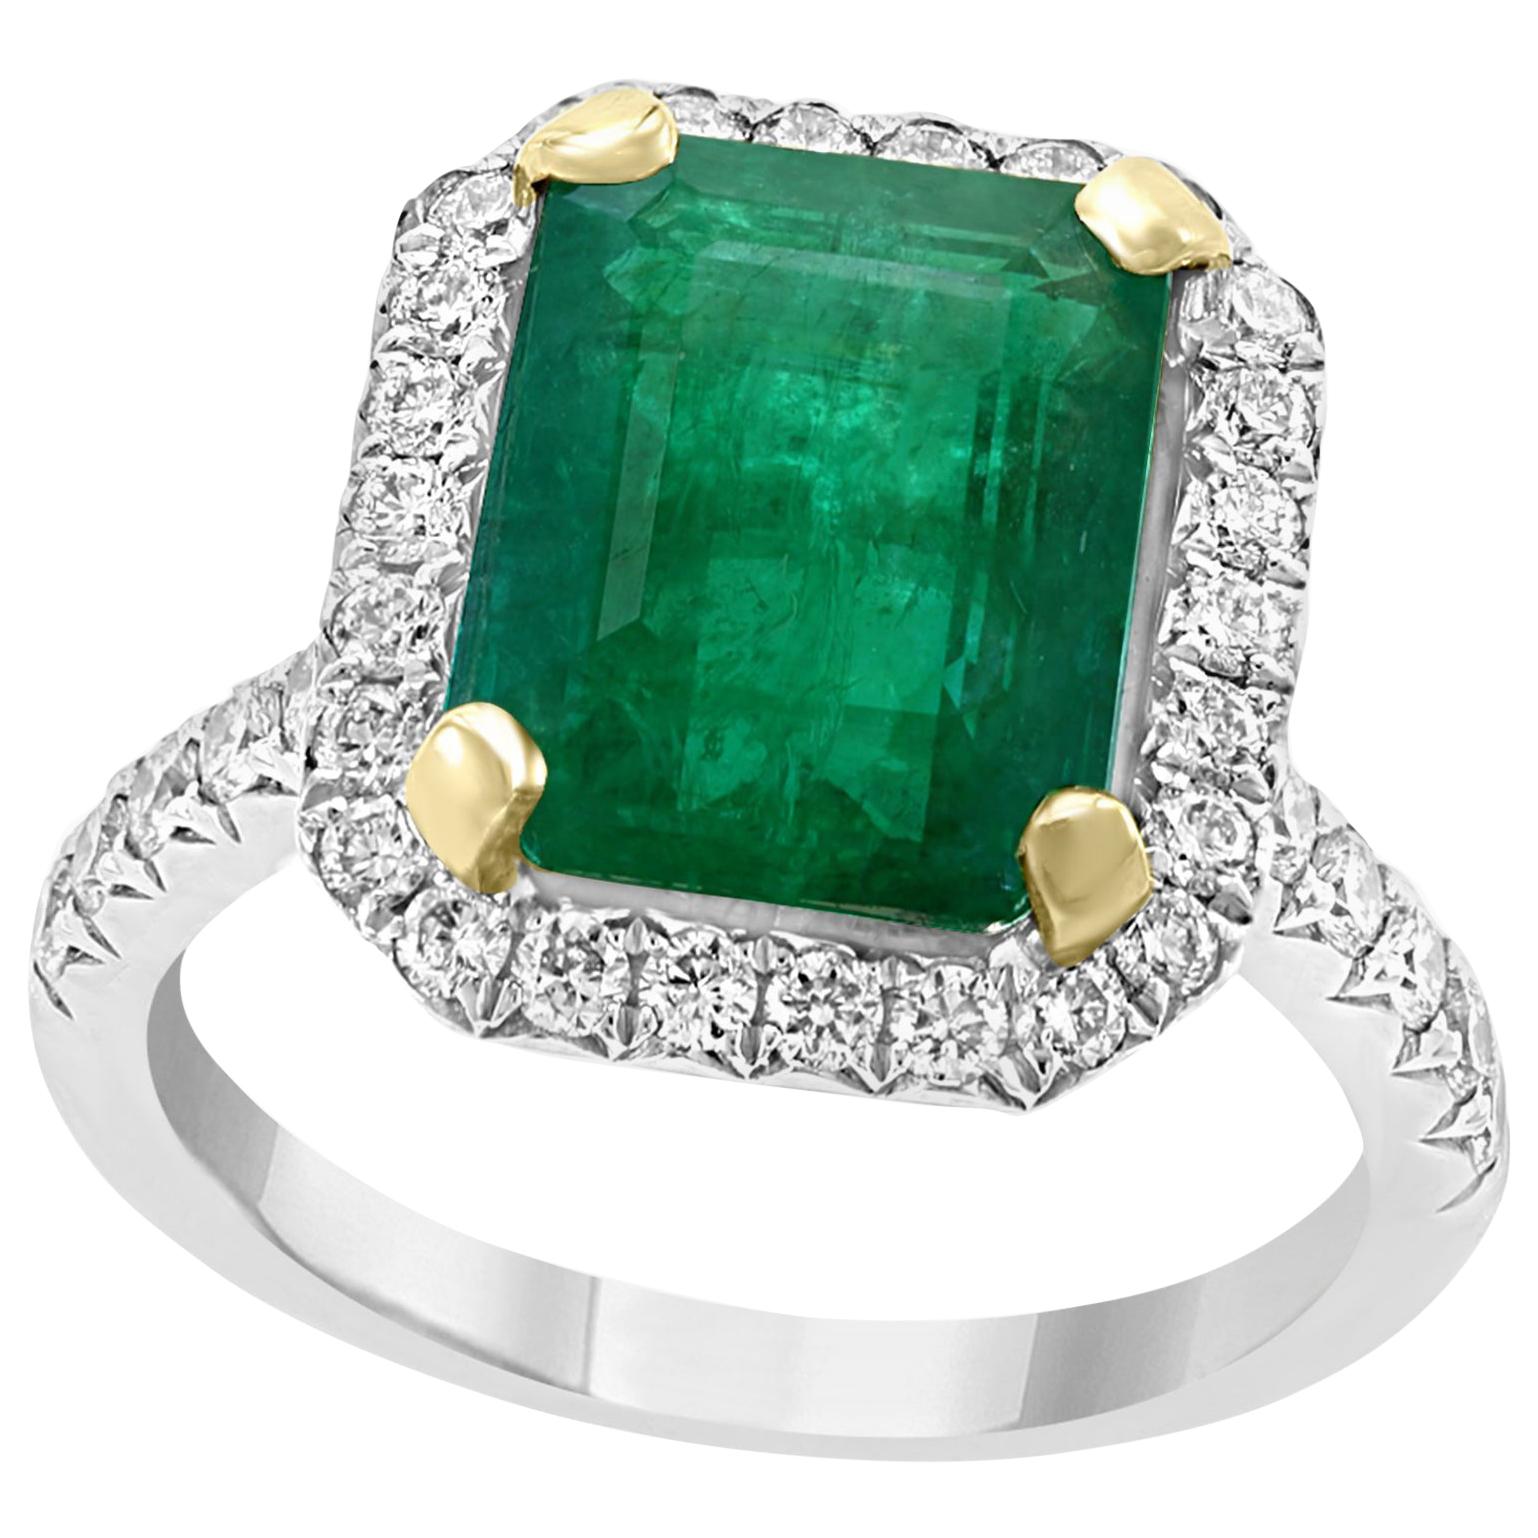 5 Carat Emerald Cut  Natural Emerald and Diamond 18 Karat Gold Ring Estate